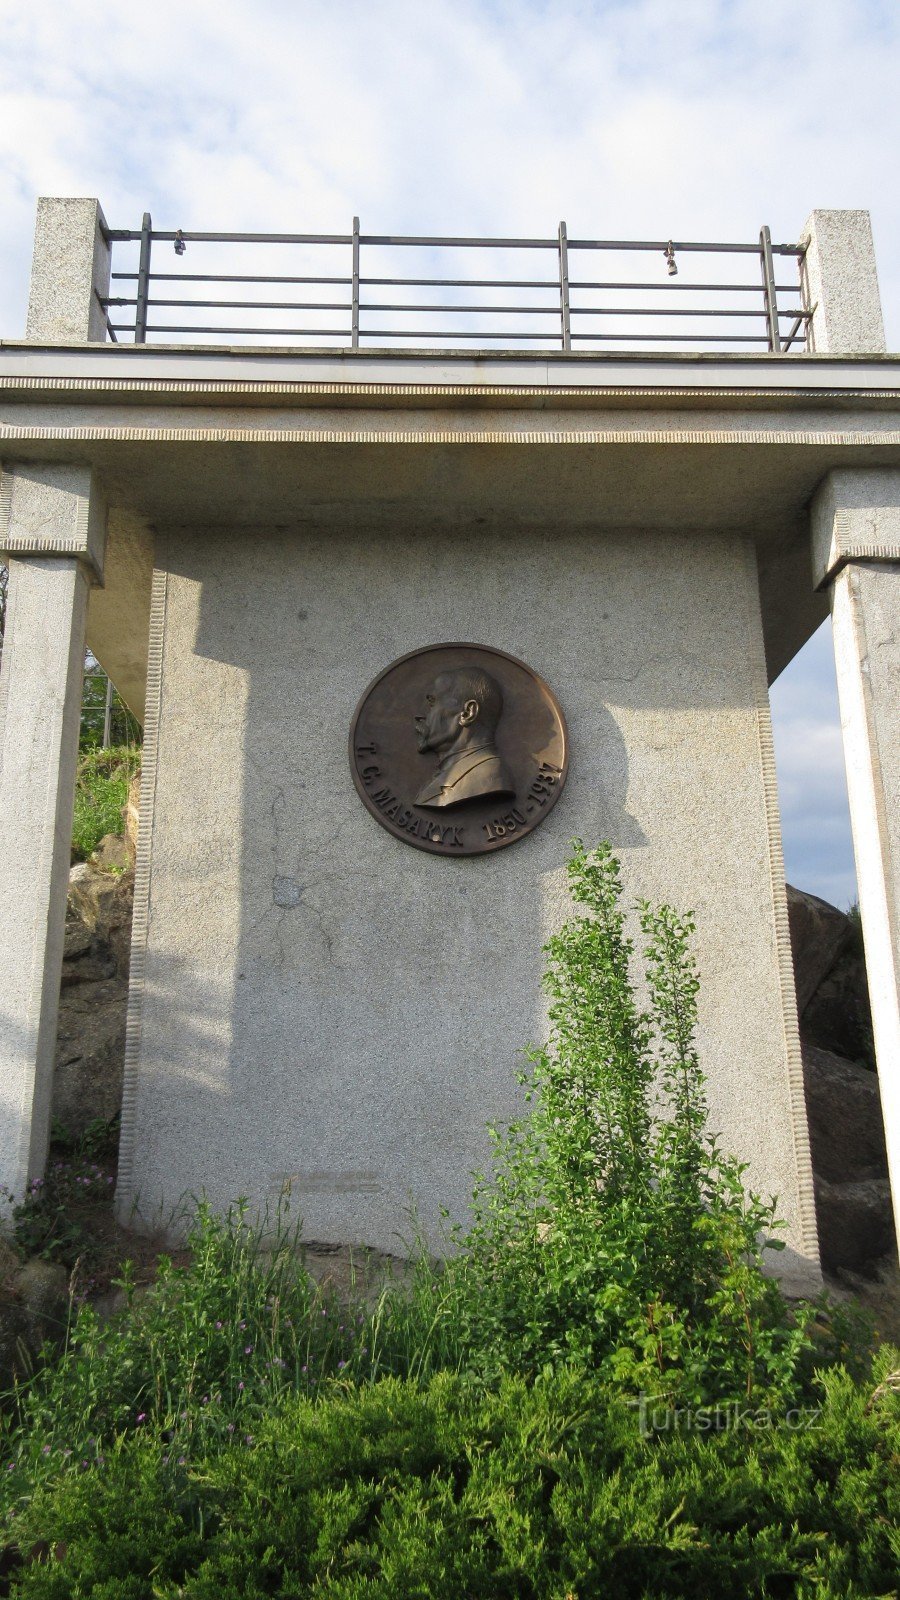 Třebíč - Het gezichtspunt van Masaryk